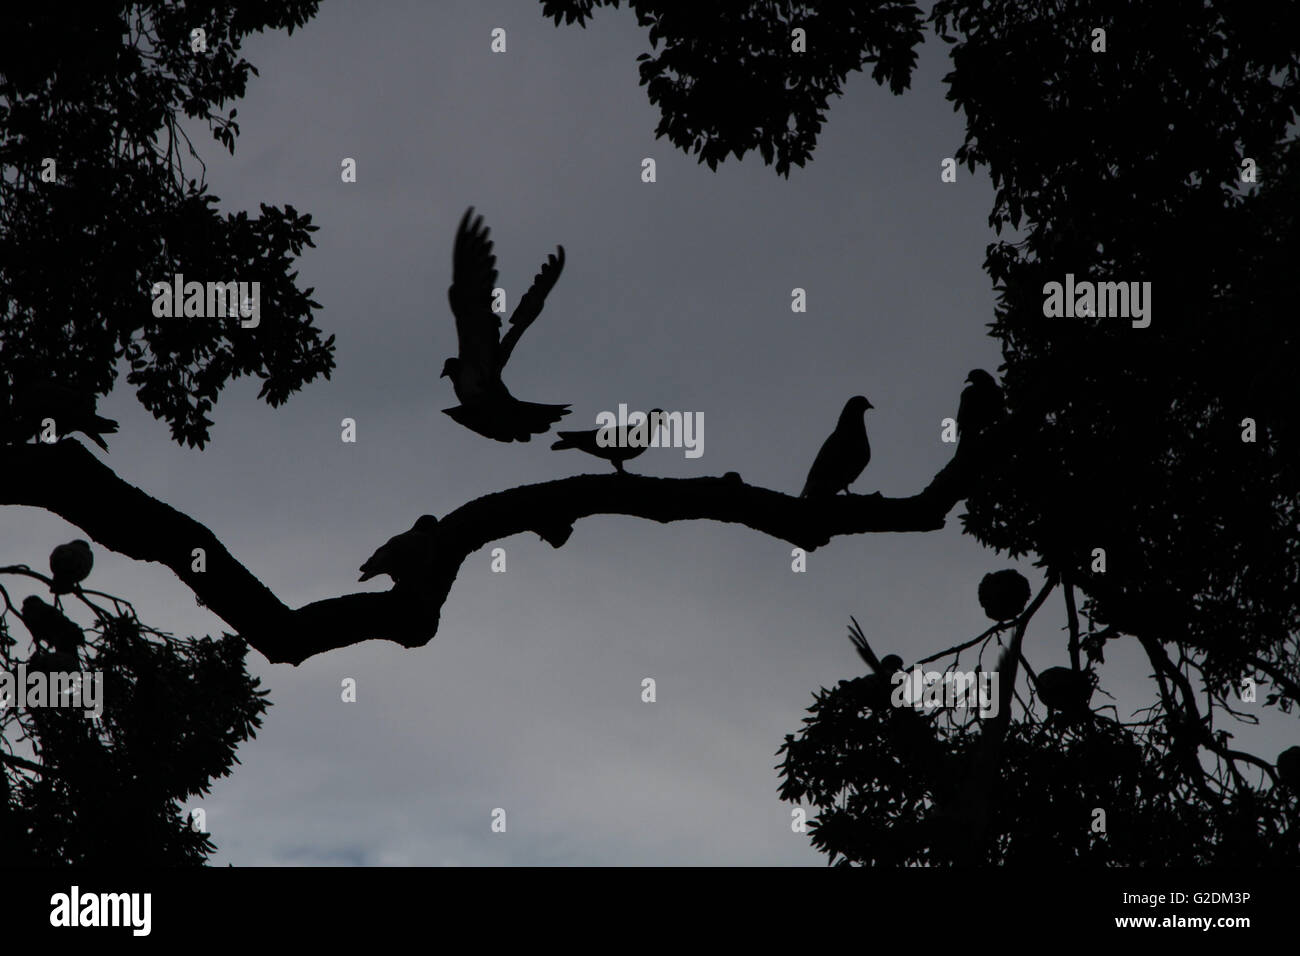 Oiseau Pigeon colombe volant blanc silhouette vector illustration colombes de paix isolé animal conception icône fond noir l'amour de l'aile Banque D'Images